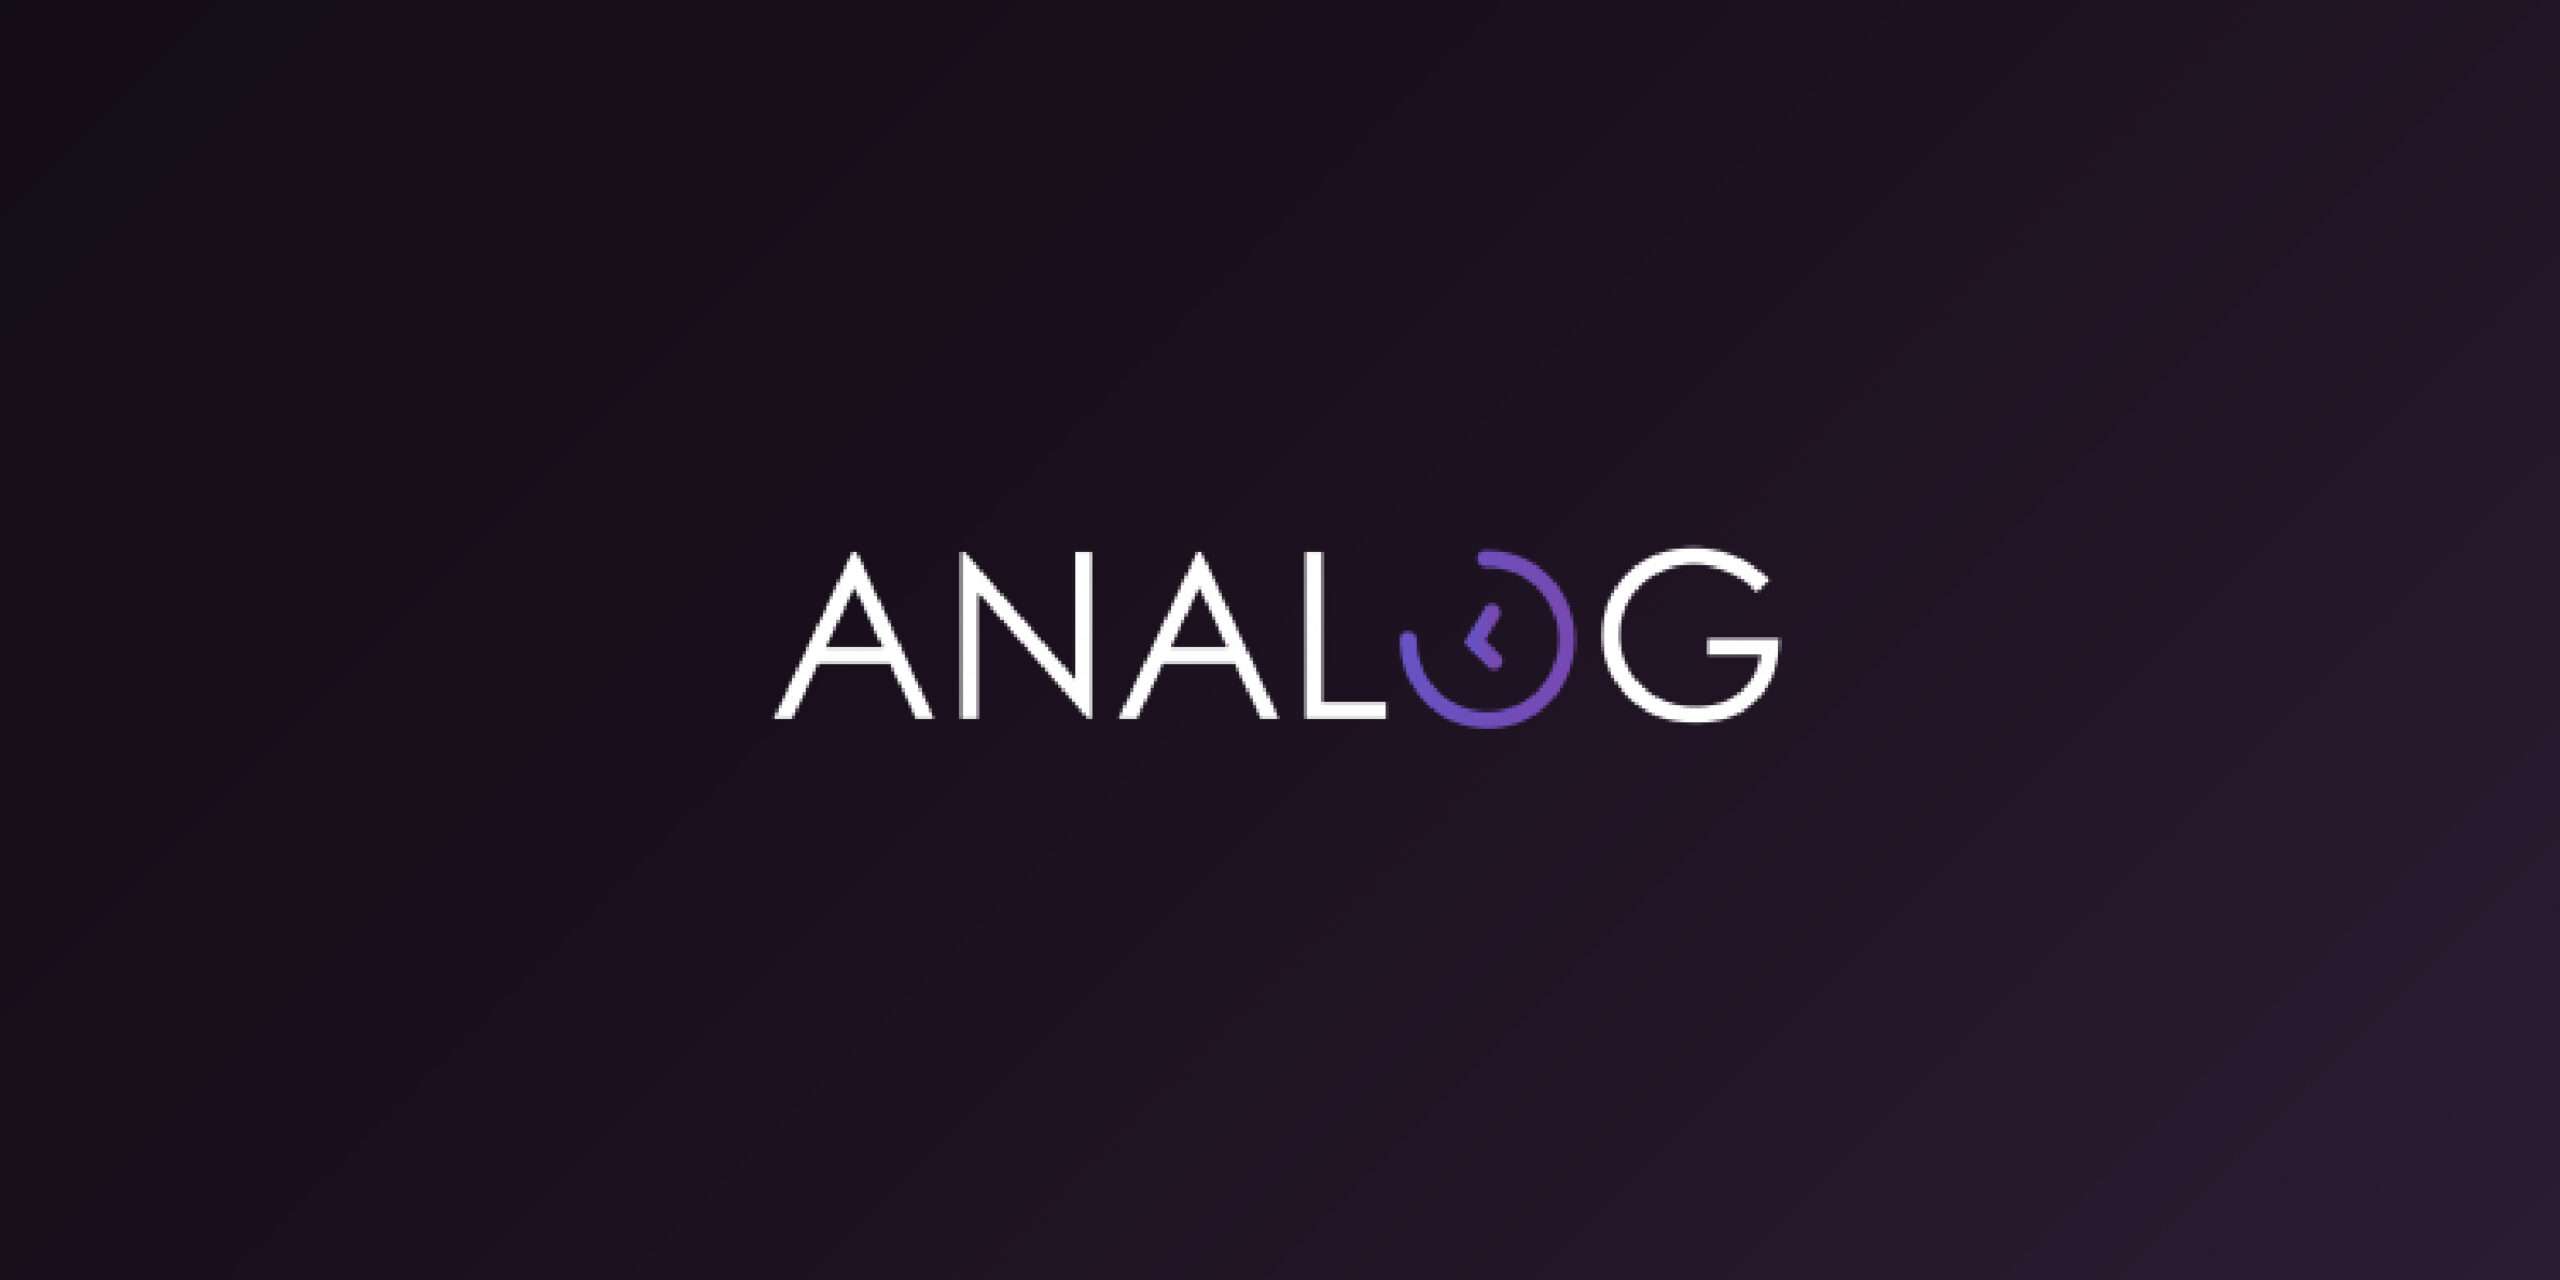 Analog Raises $16 Million for Cross-Chain Development